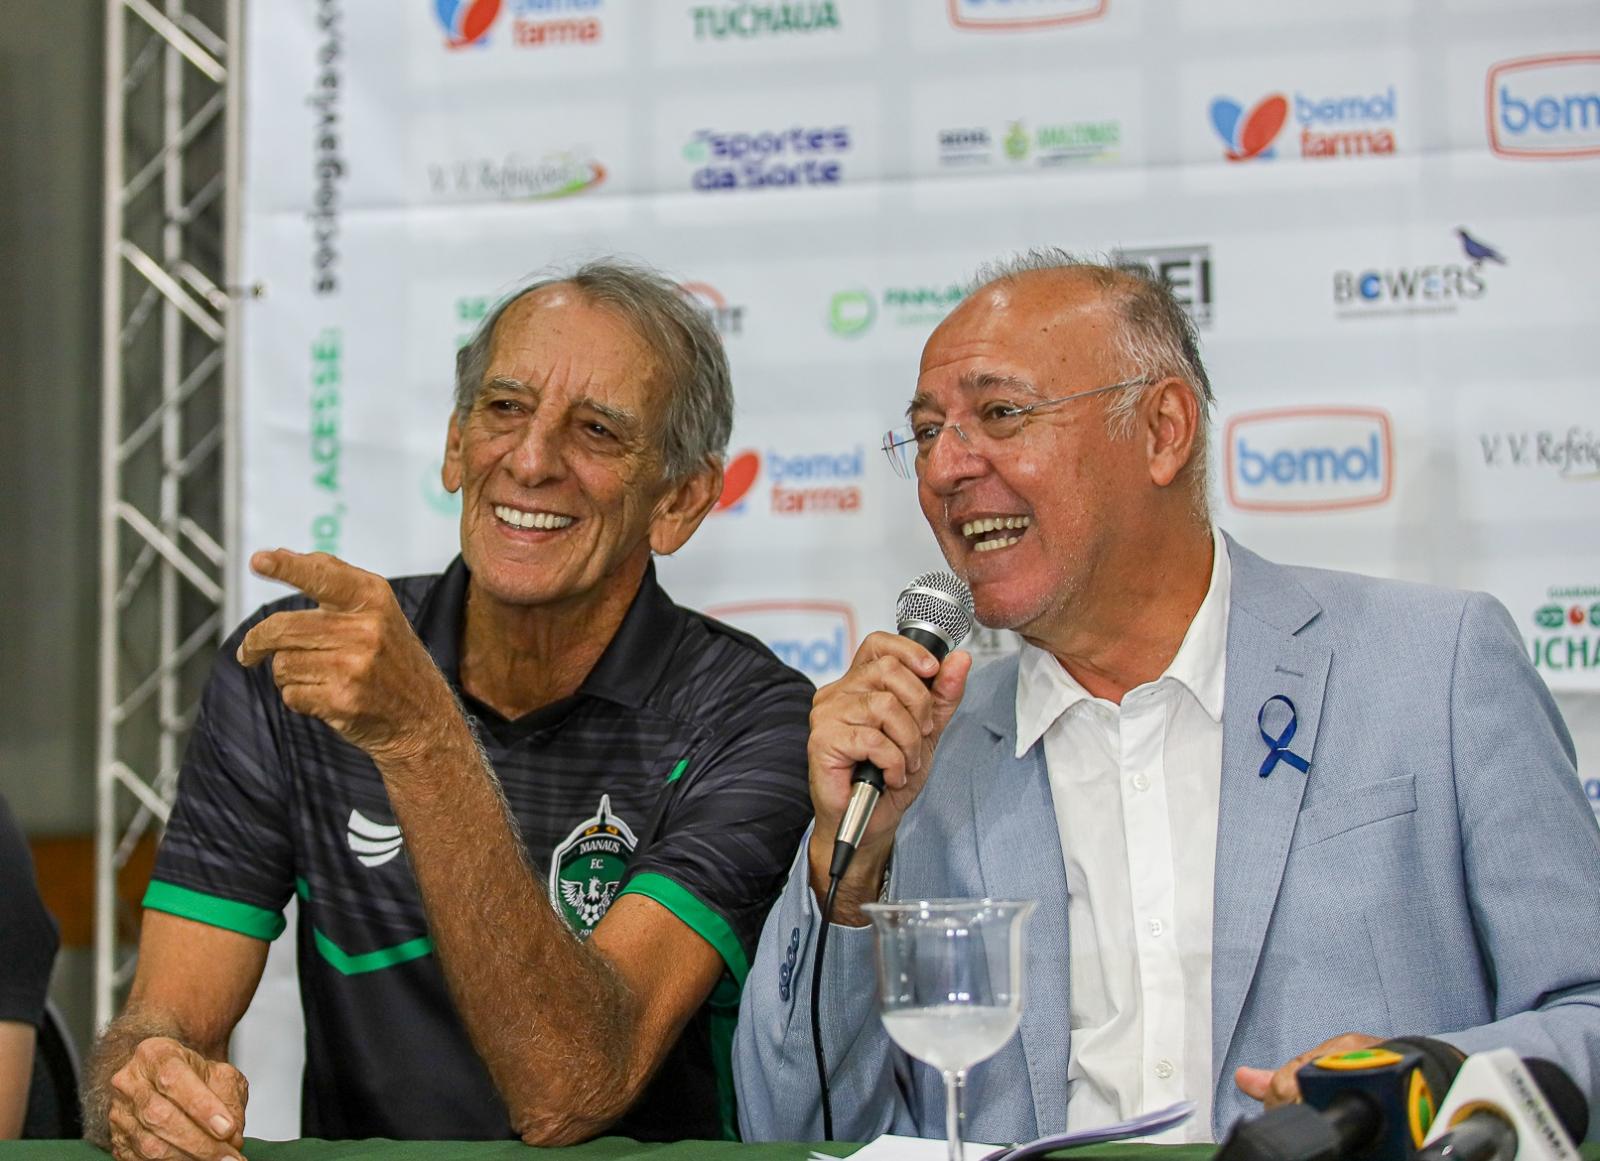 Manaus FC apresenta Aderbal Lana como técnico e promove Márcio Passos a gerente de futebol